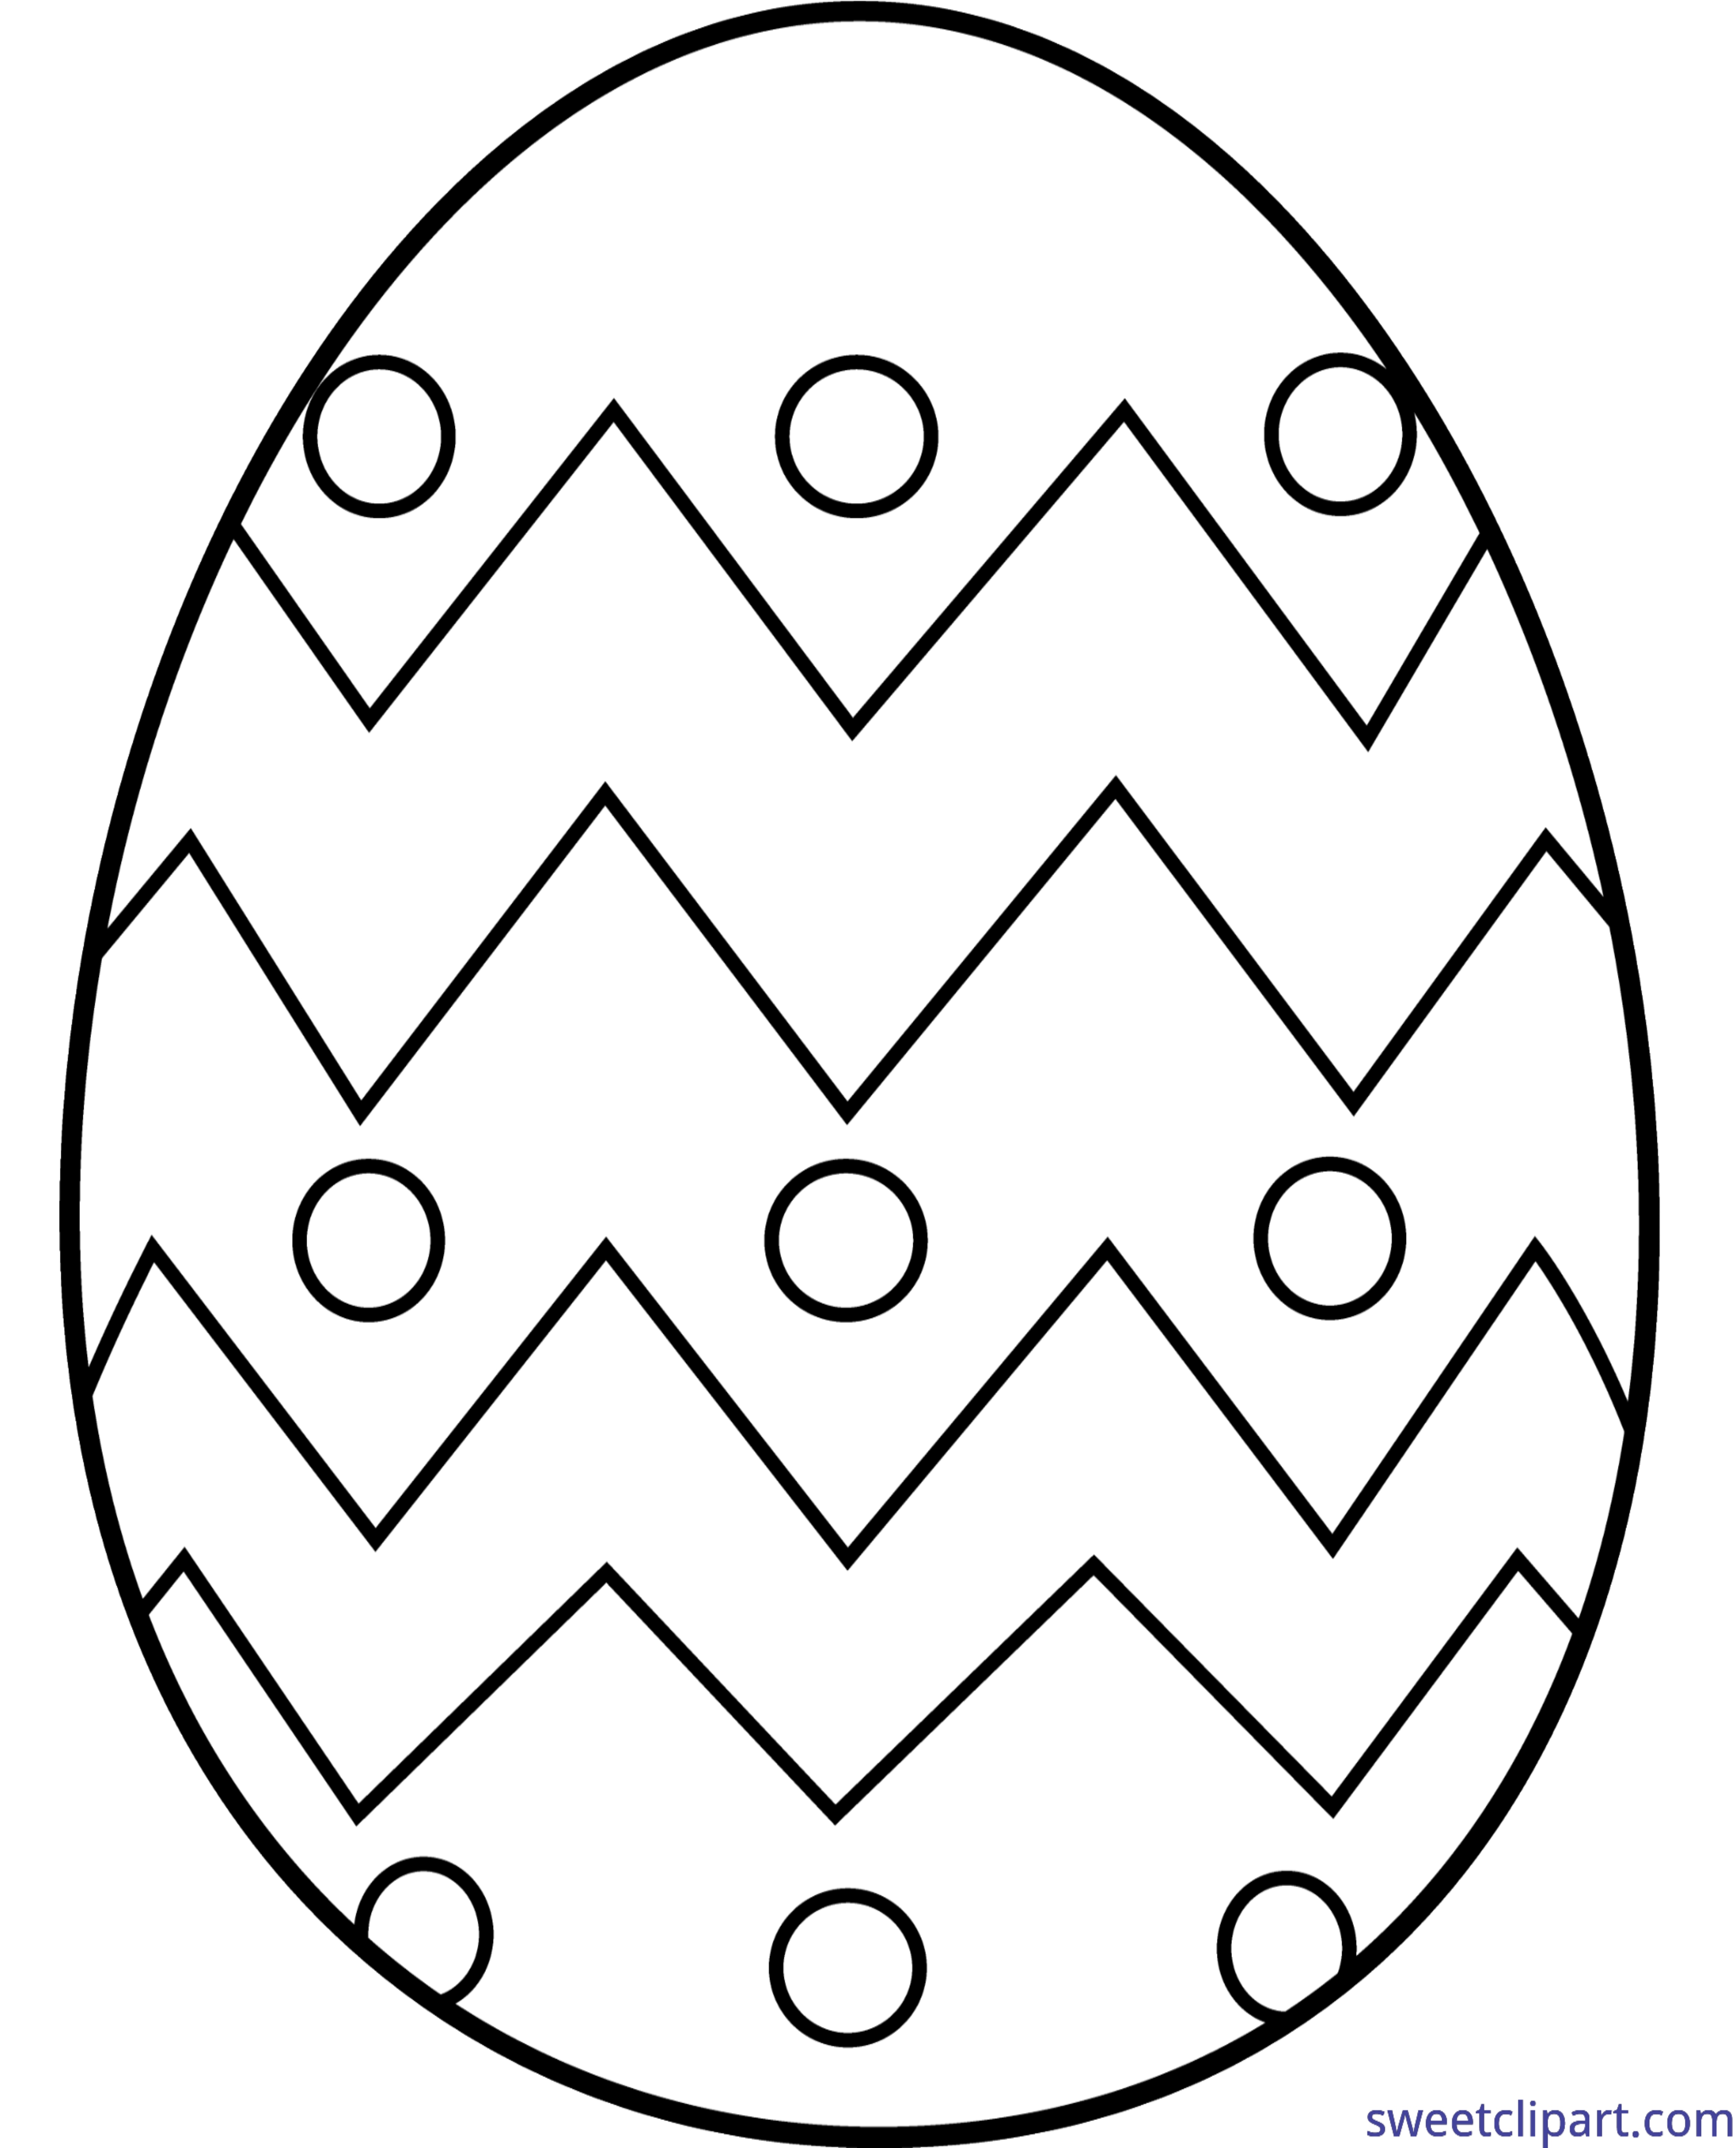 Заготовка пасхального яйца. Пасхальное яйцо раскраска для детей 3-4 лет. Трафареты пасхальных яиц для раскрашивания. Пасхальное яйцо раскраска шаблон. Раскраски яйца на Пасху для детей.